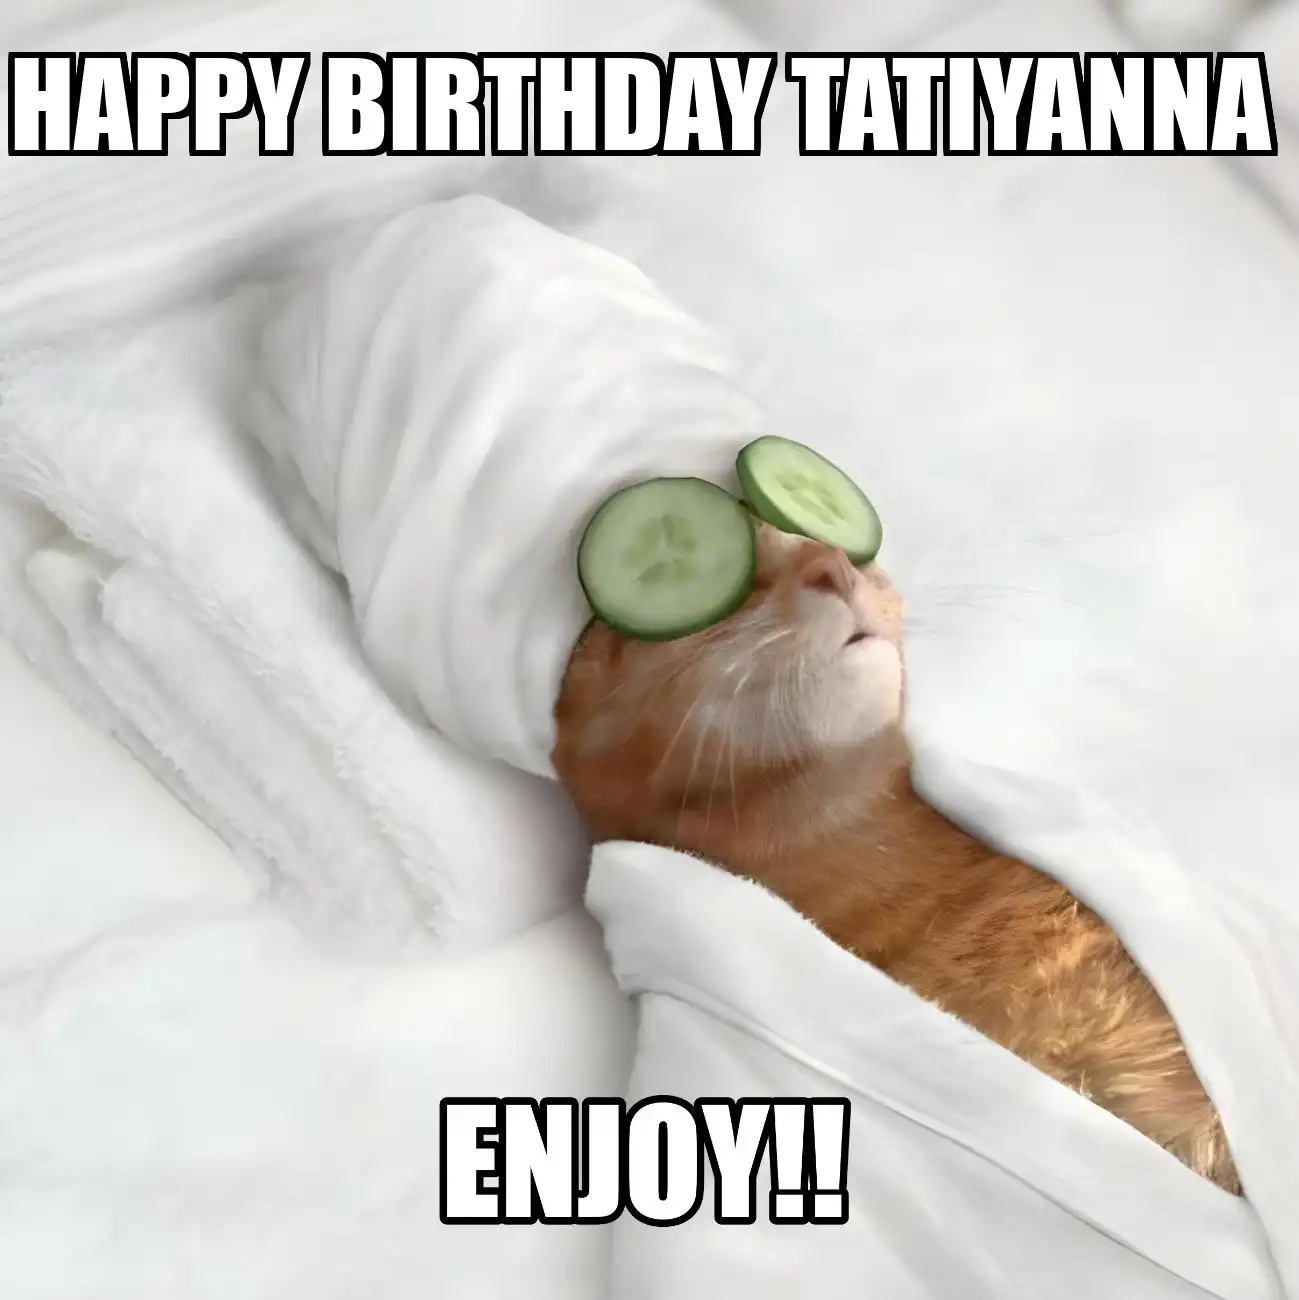 Happy Birthday Tatiyanna Enjoy Cat Meme